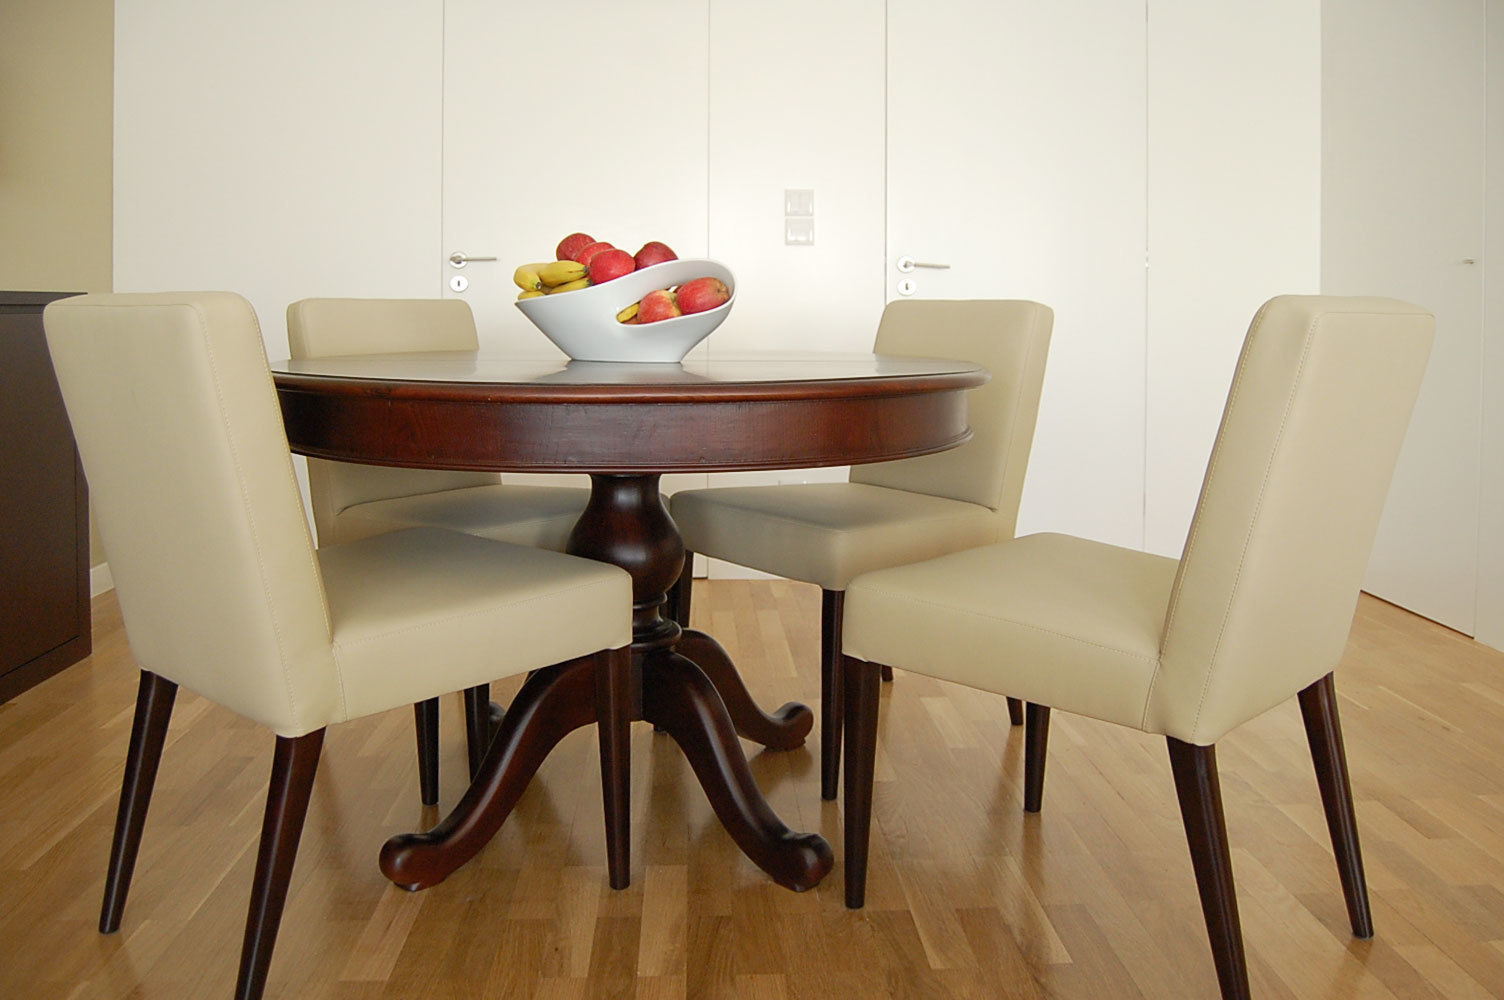 Mesa de jantar detalhe MOYO - Decoração de Interiores Salas de jantar clássicas Derivados de madeira Transparente mesa de jantar,sala,decoração interior,decoração ideias,decoração sala,mesa,sala de jantar,Mesas